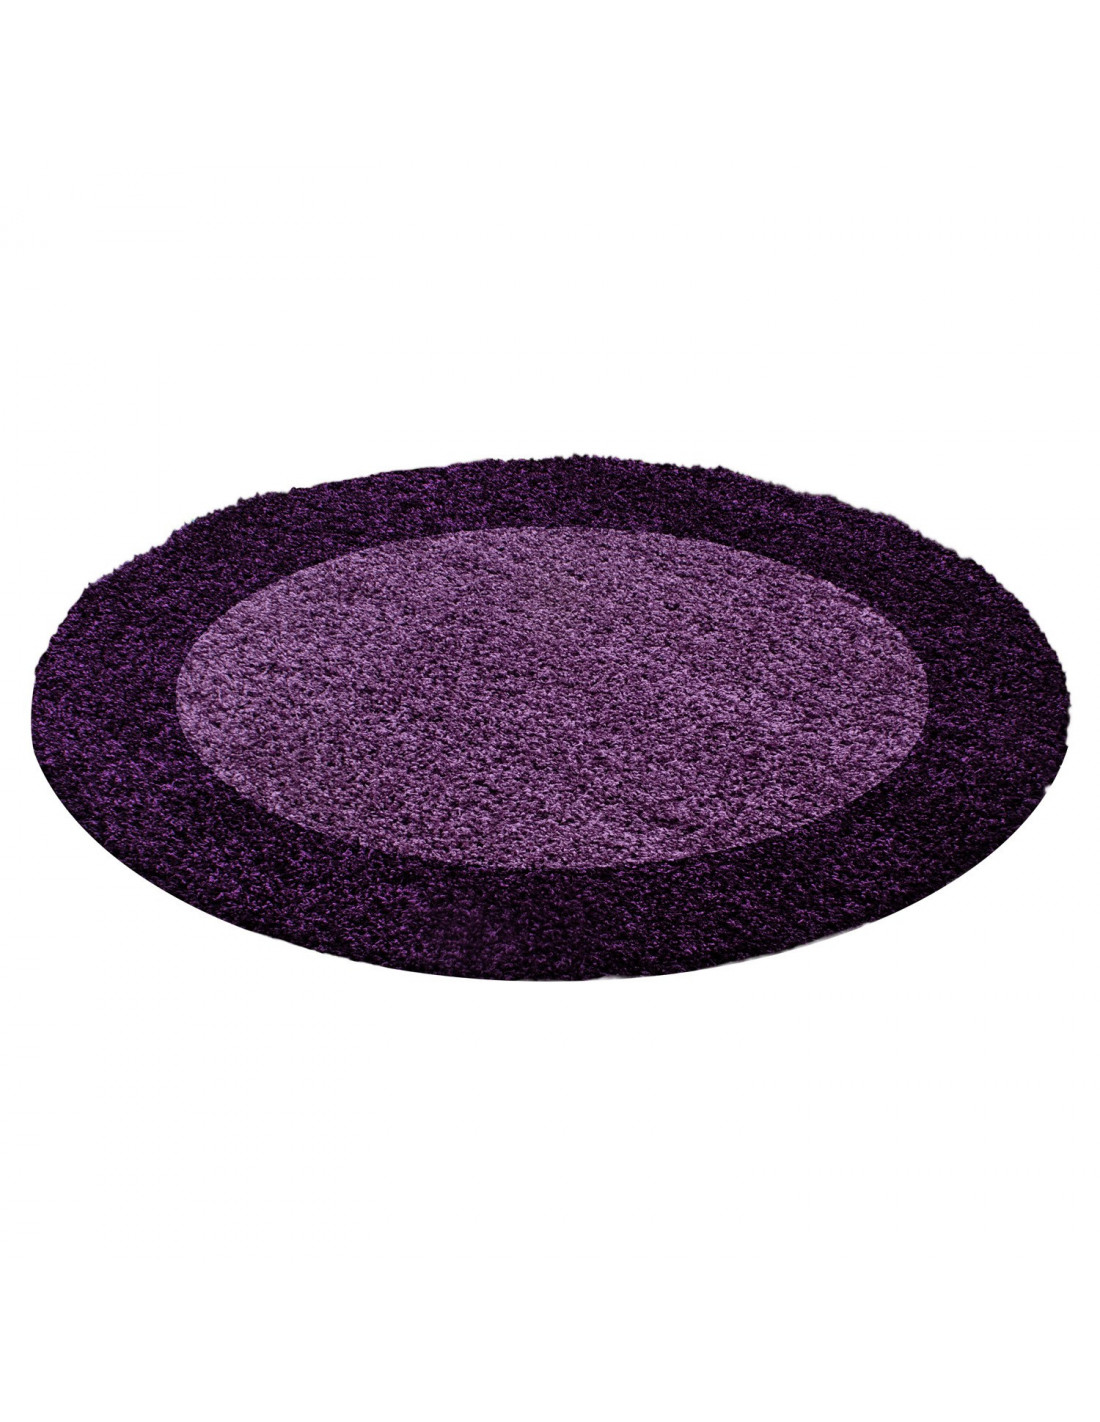 Shaggy Carpet Shaggy Carpet 2 Colors Pile Height 3cm Purple Violet